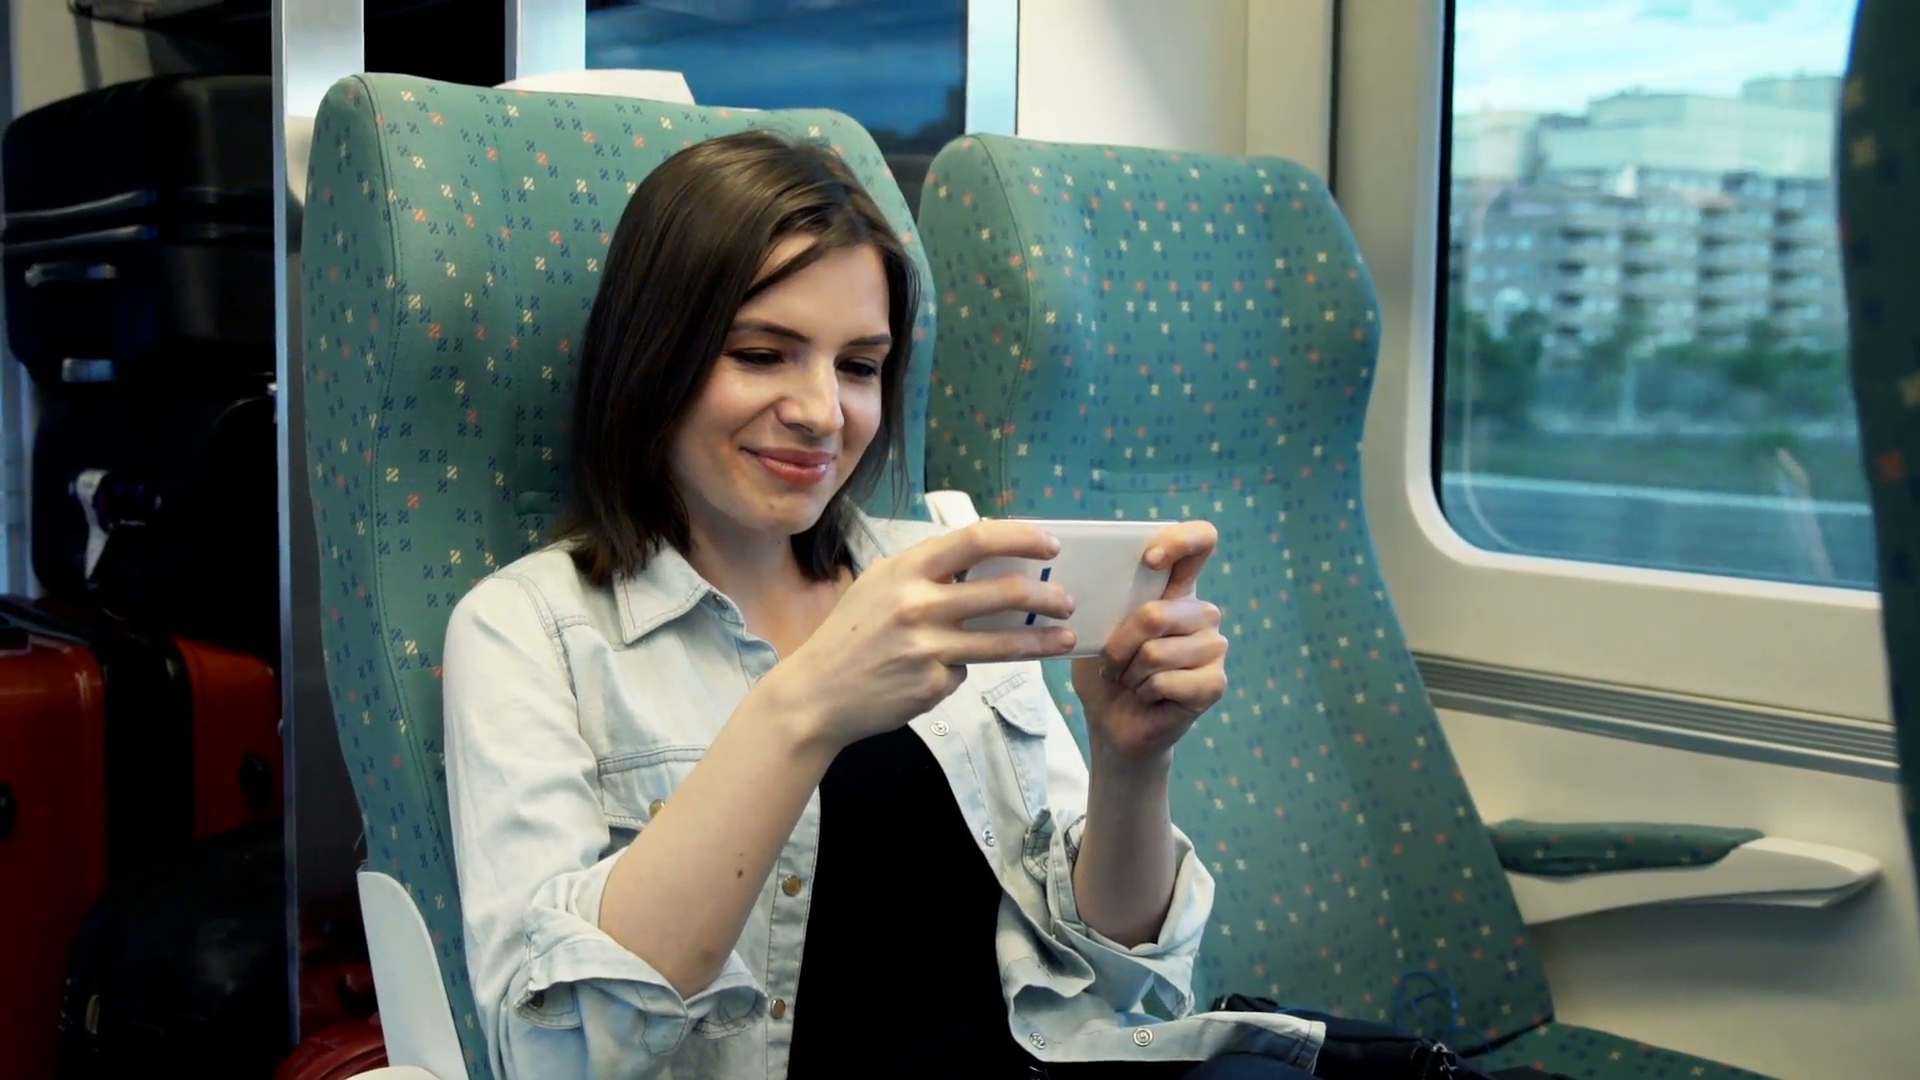 शोध के आया सामने, स्मार्टफोन पर गेम खेलने वालों में 47 फीसदी महिलाएं